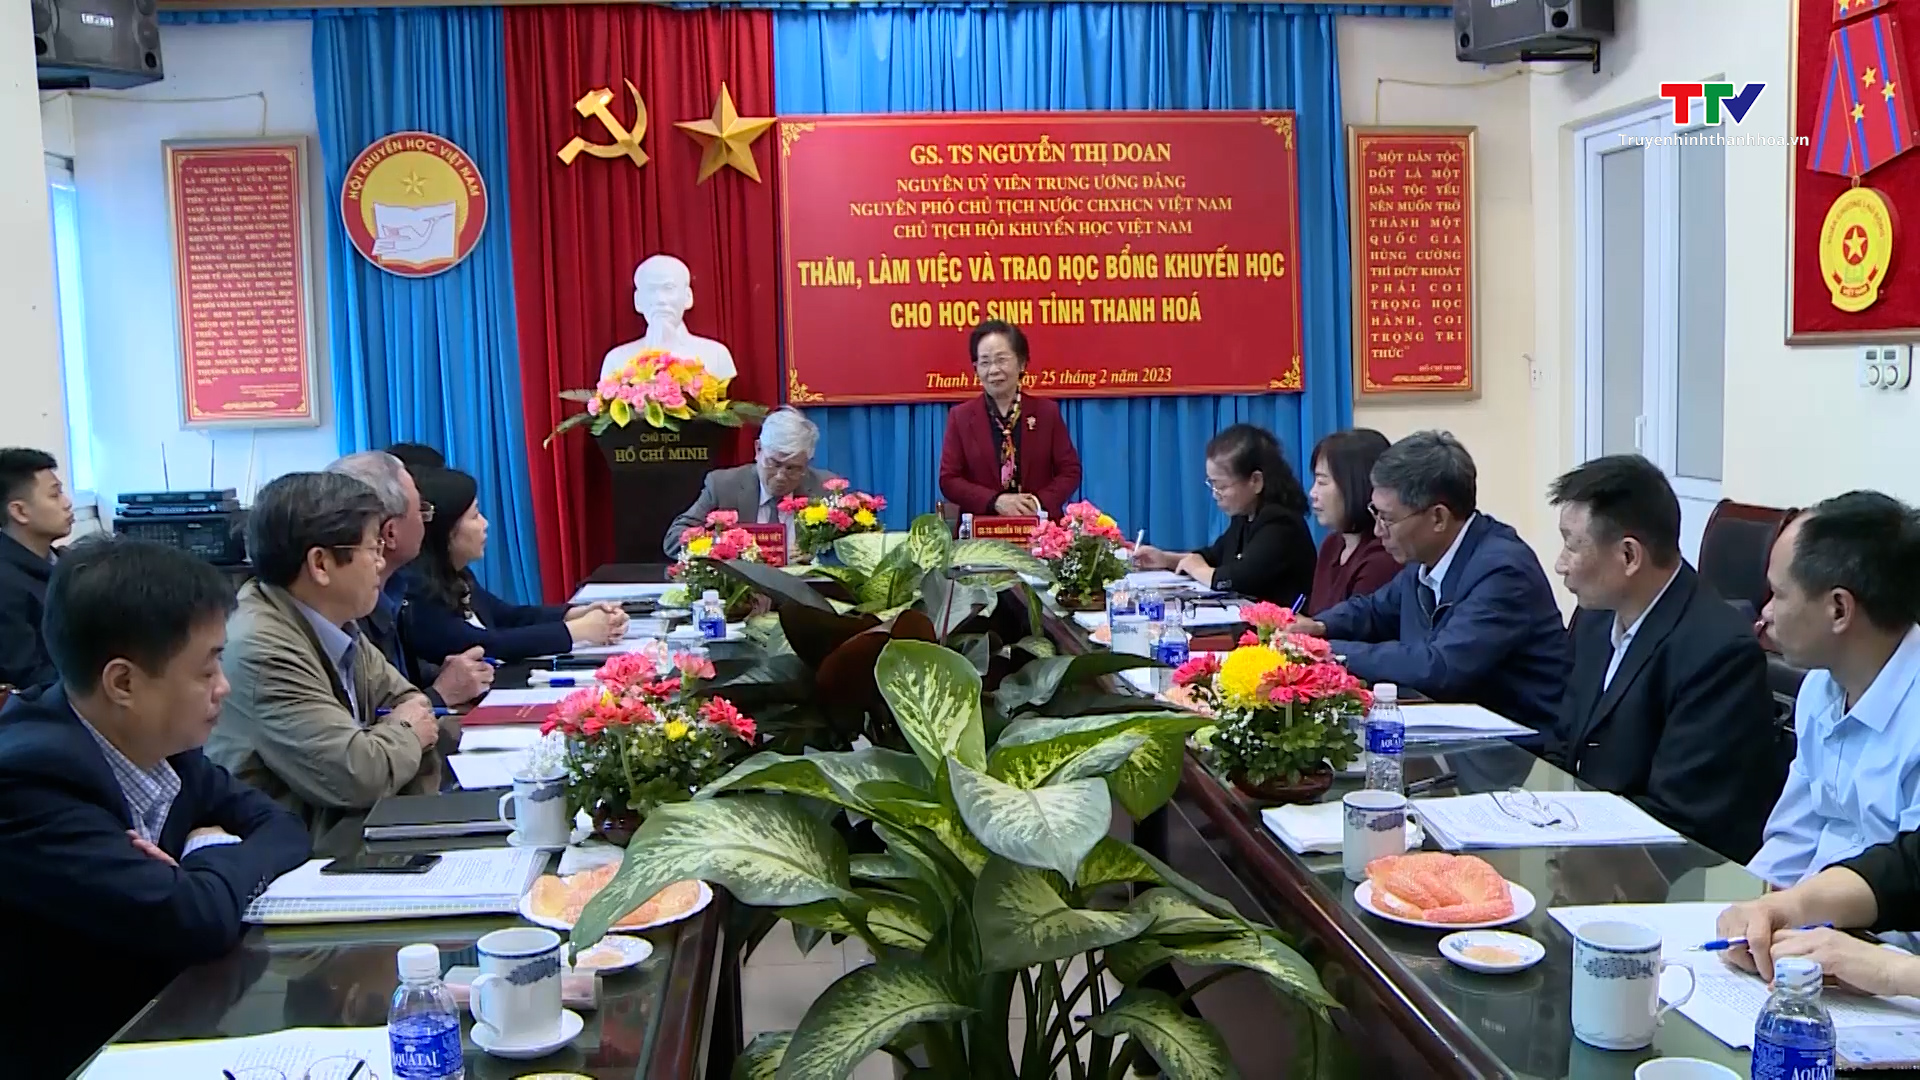 Chủ tịch Hội khuyến học Việt Nam thăm, làm việc và trao học bổng khuyến học cho học sinh tỉnh Thanh Hóa - Ảnh 2.